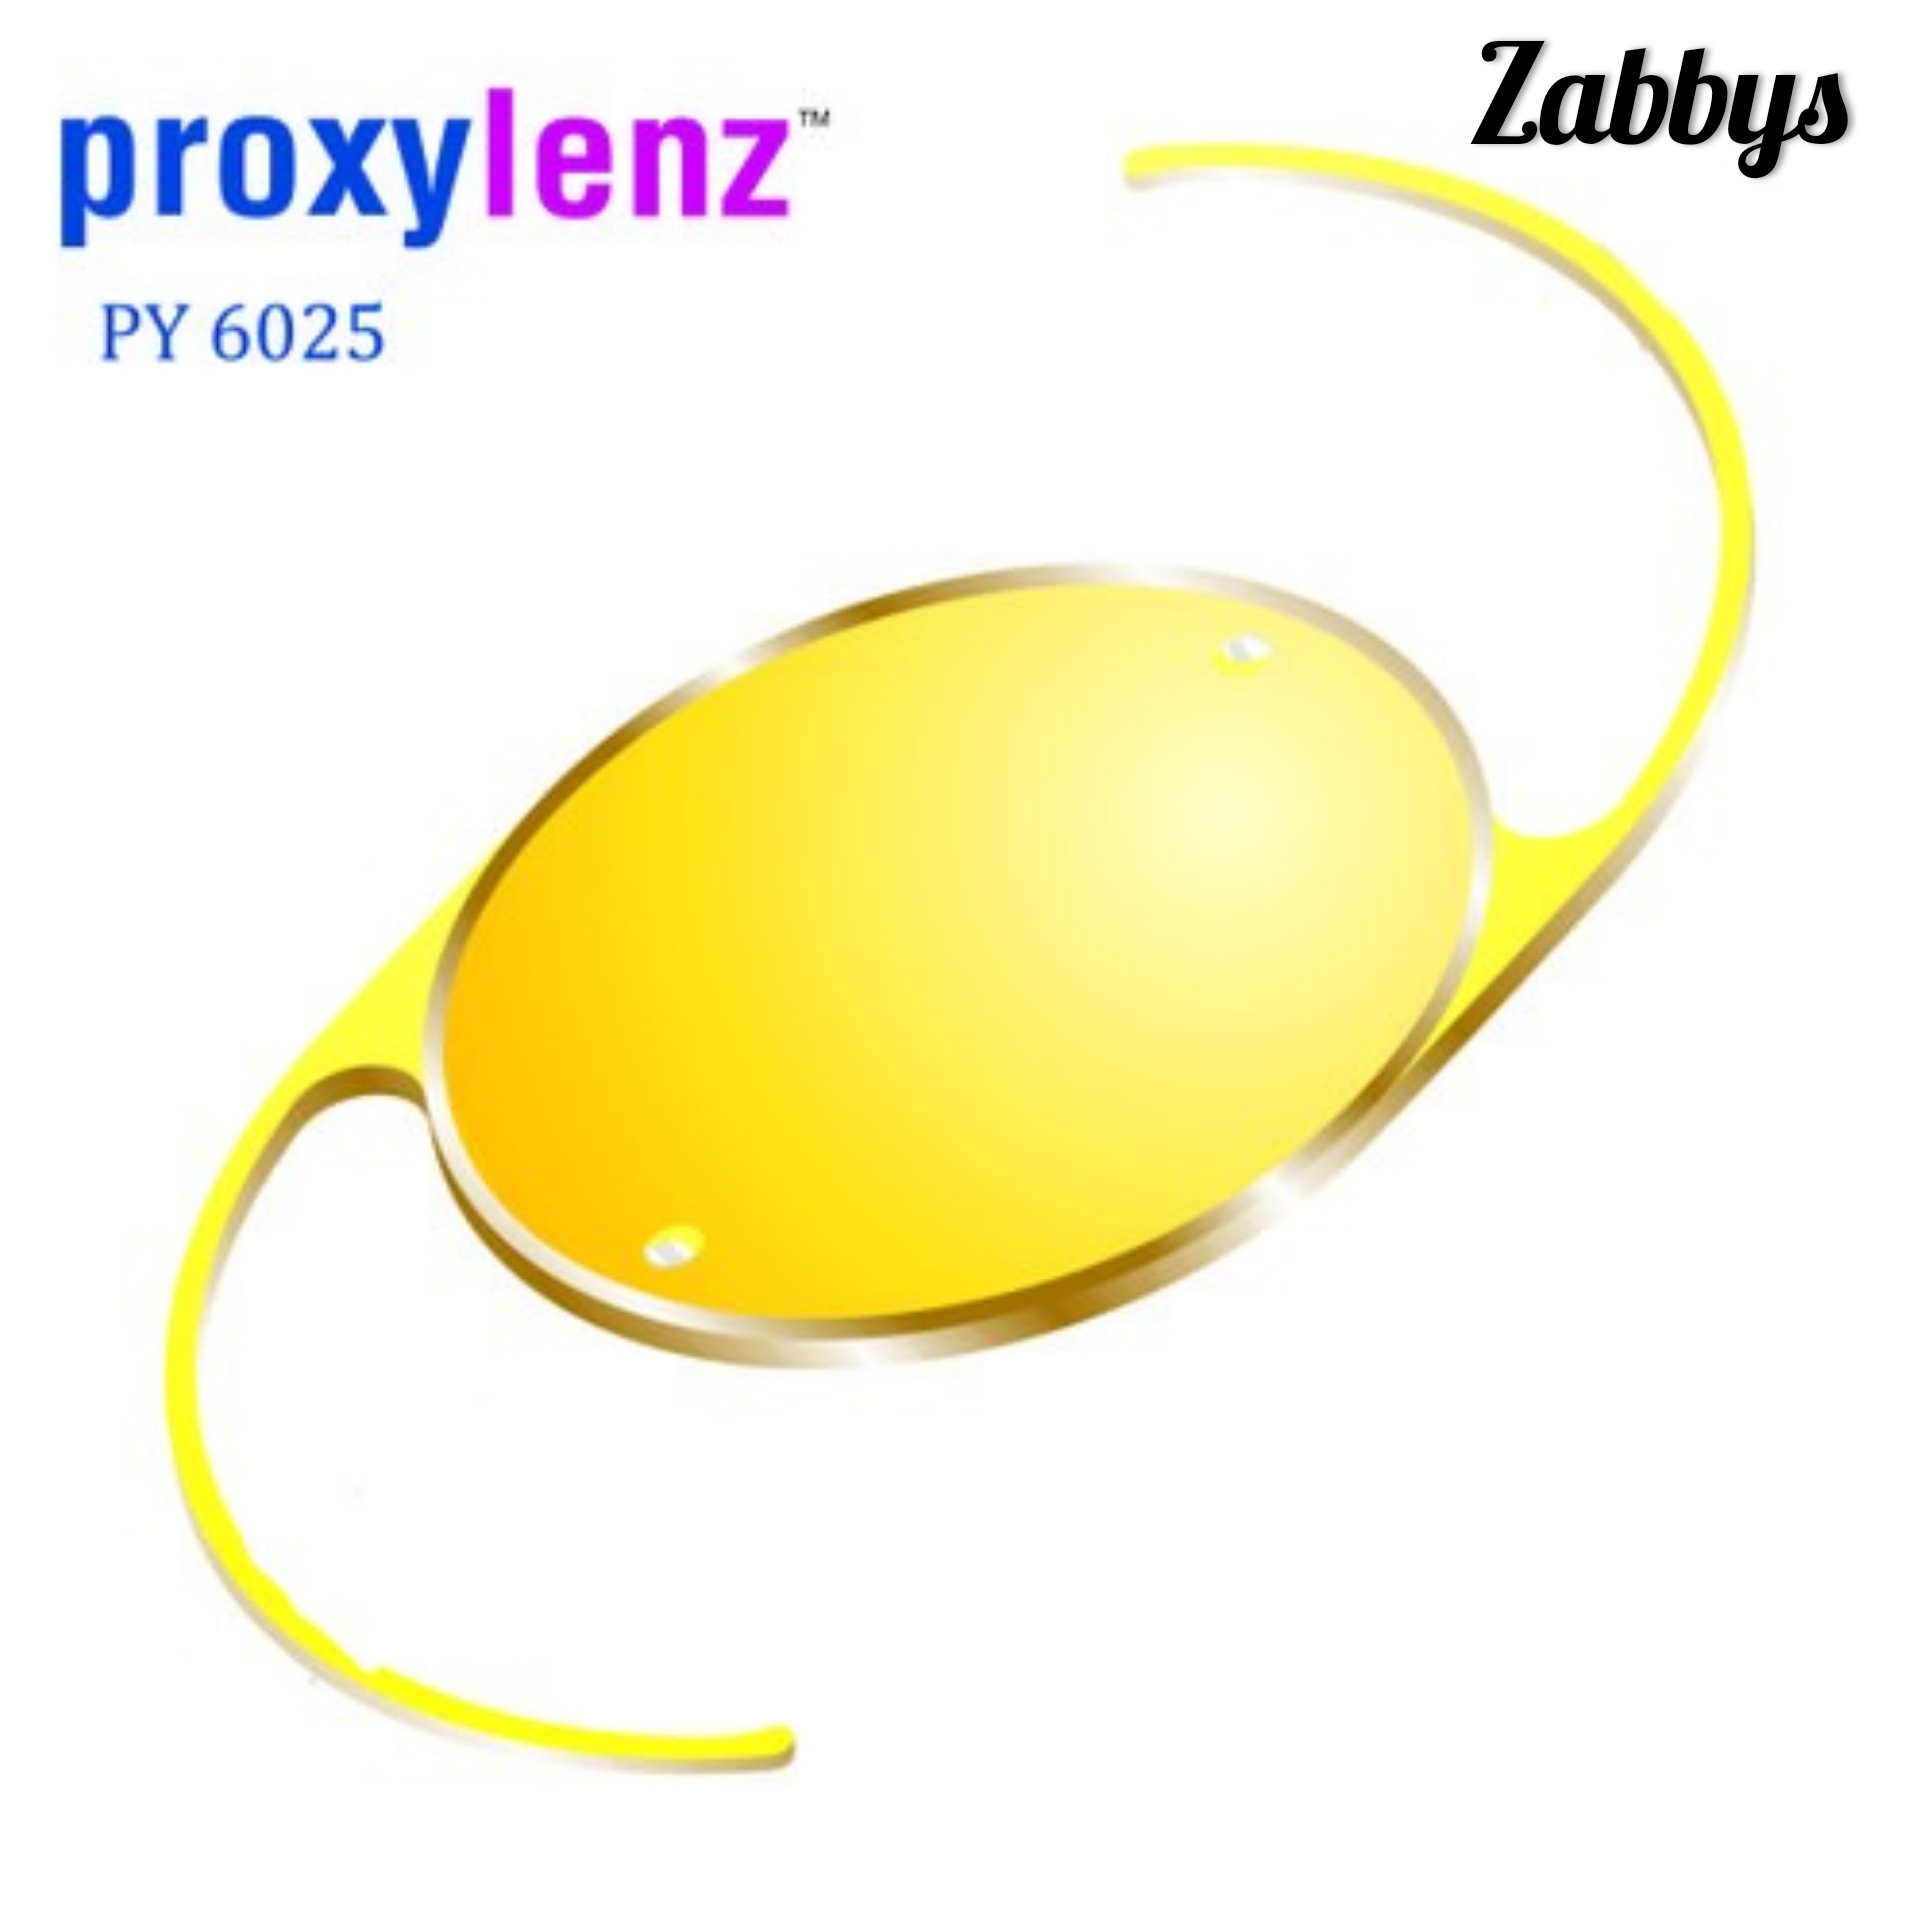 ZABBYS PROXYLENZ